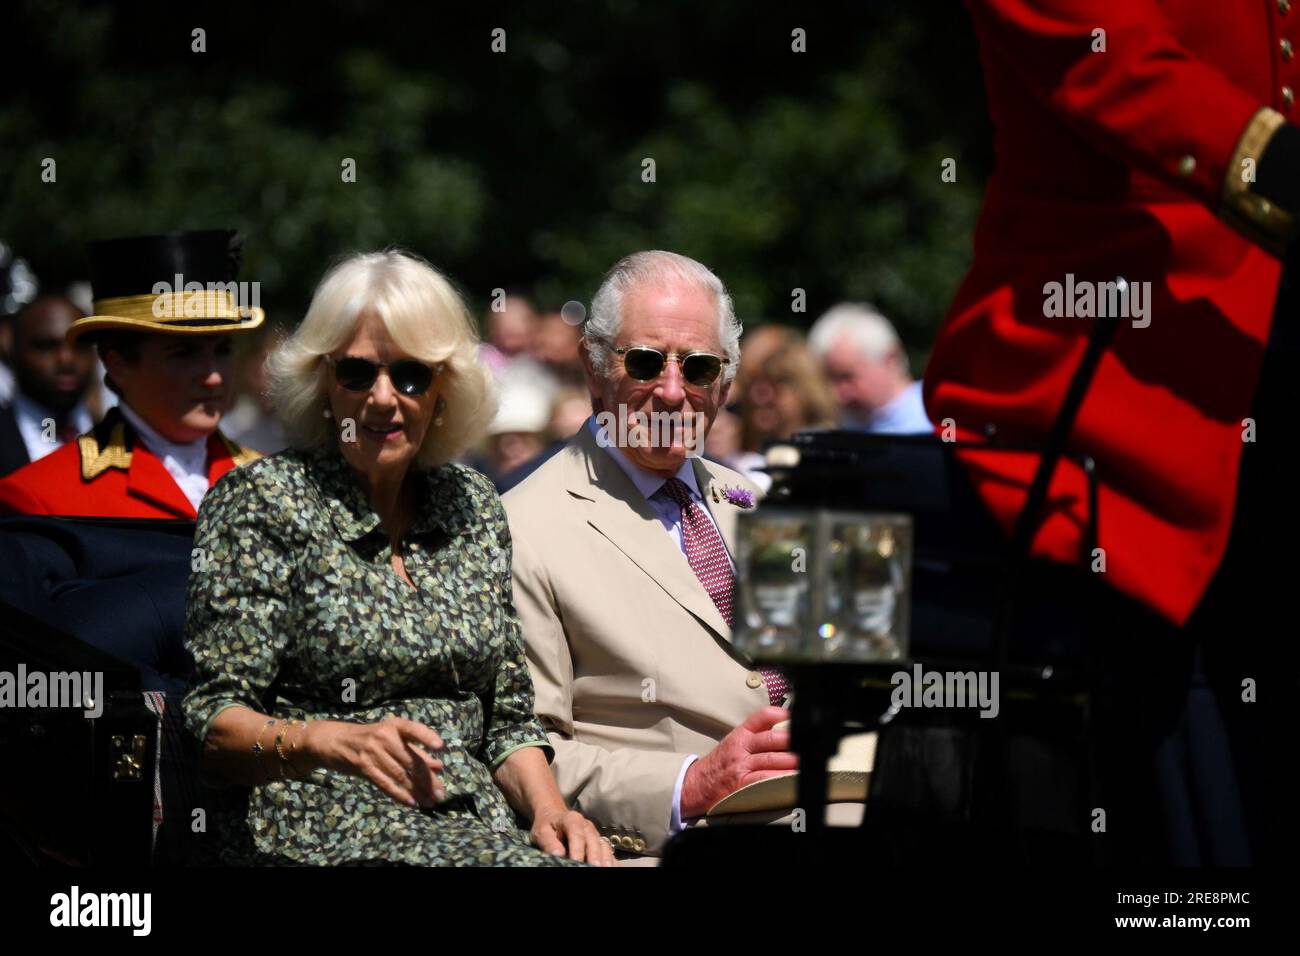 König Charles III. Und Königin Camilla kommen mit der Pferdekutsche an, um die Sandringham Flower Show im Sandringham House in Norfolk zu besuchen. Bilddatum: Mittwoch, 26. Juli 2023. Stockfoto